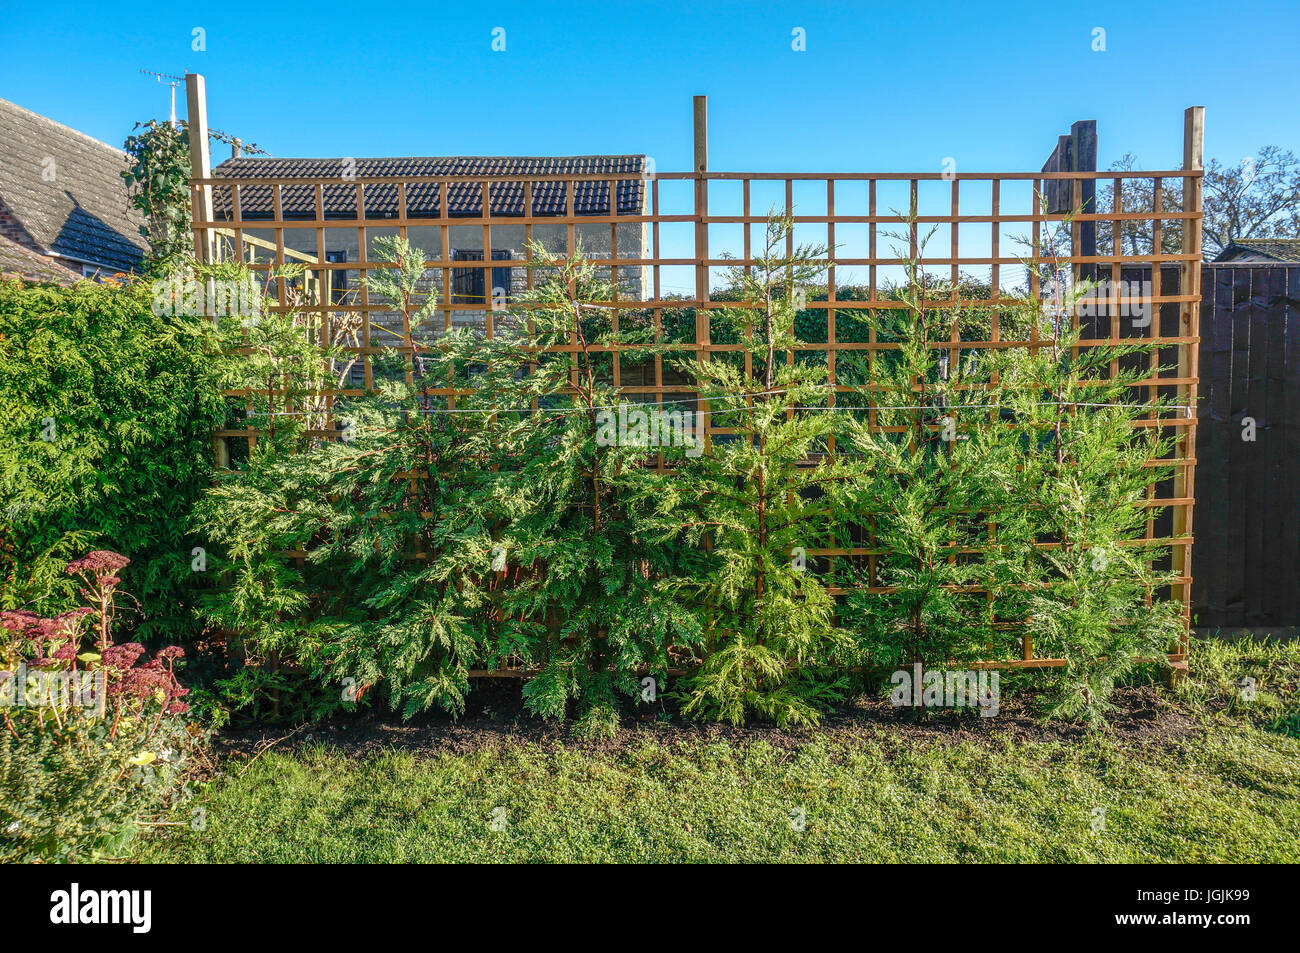 Una fila di recente piantato Leylandii conifere, sostenuto contro i pergolati in legno in un giardino soleggiato, contro un cielo blu chiaro. Inghilterra, Regno Unito. Foto Stock